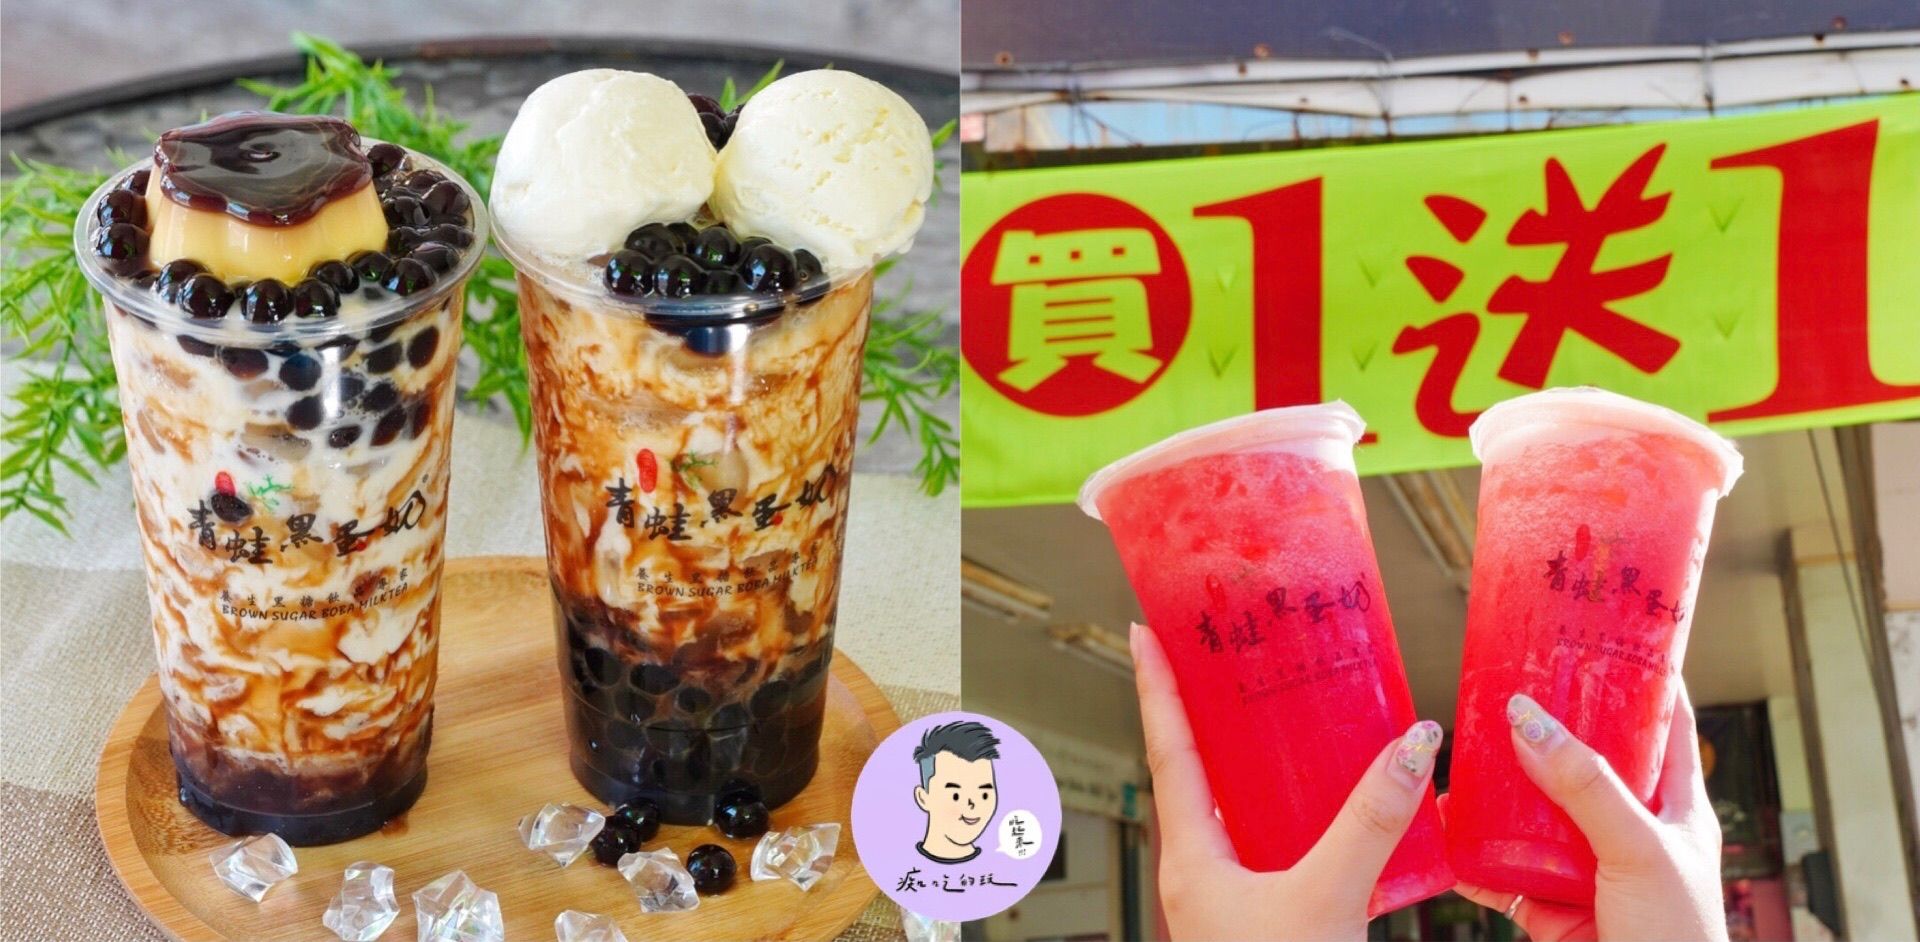 【台南飲料】大愛布丁+黑糖珍珠鮮奶「青蛙黑蛋奶」三款飲料限時買一送一，台南在地17年經典飲料店